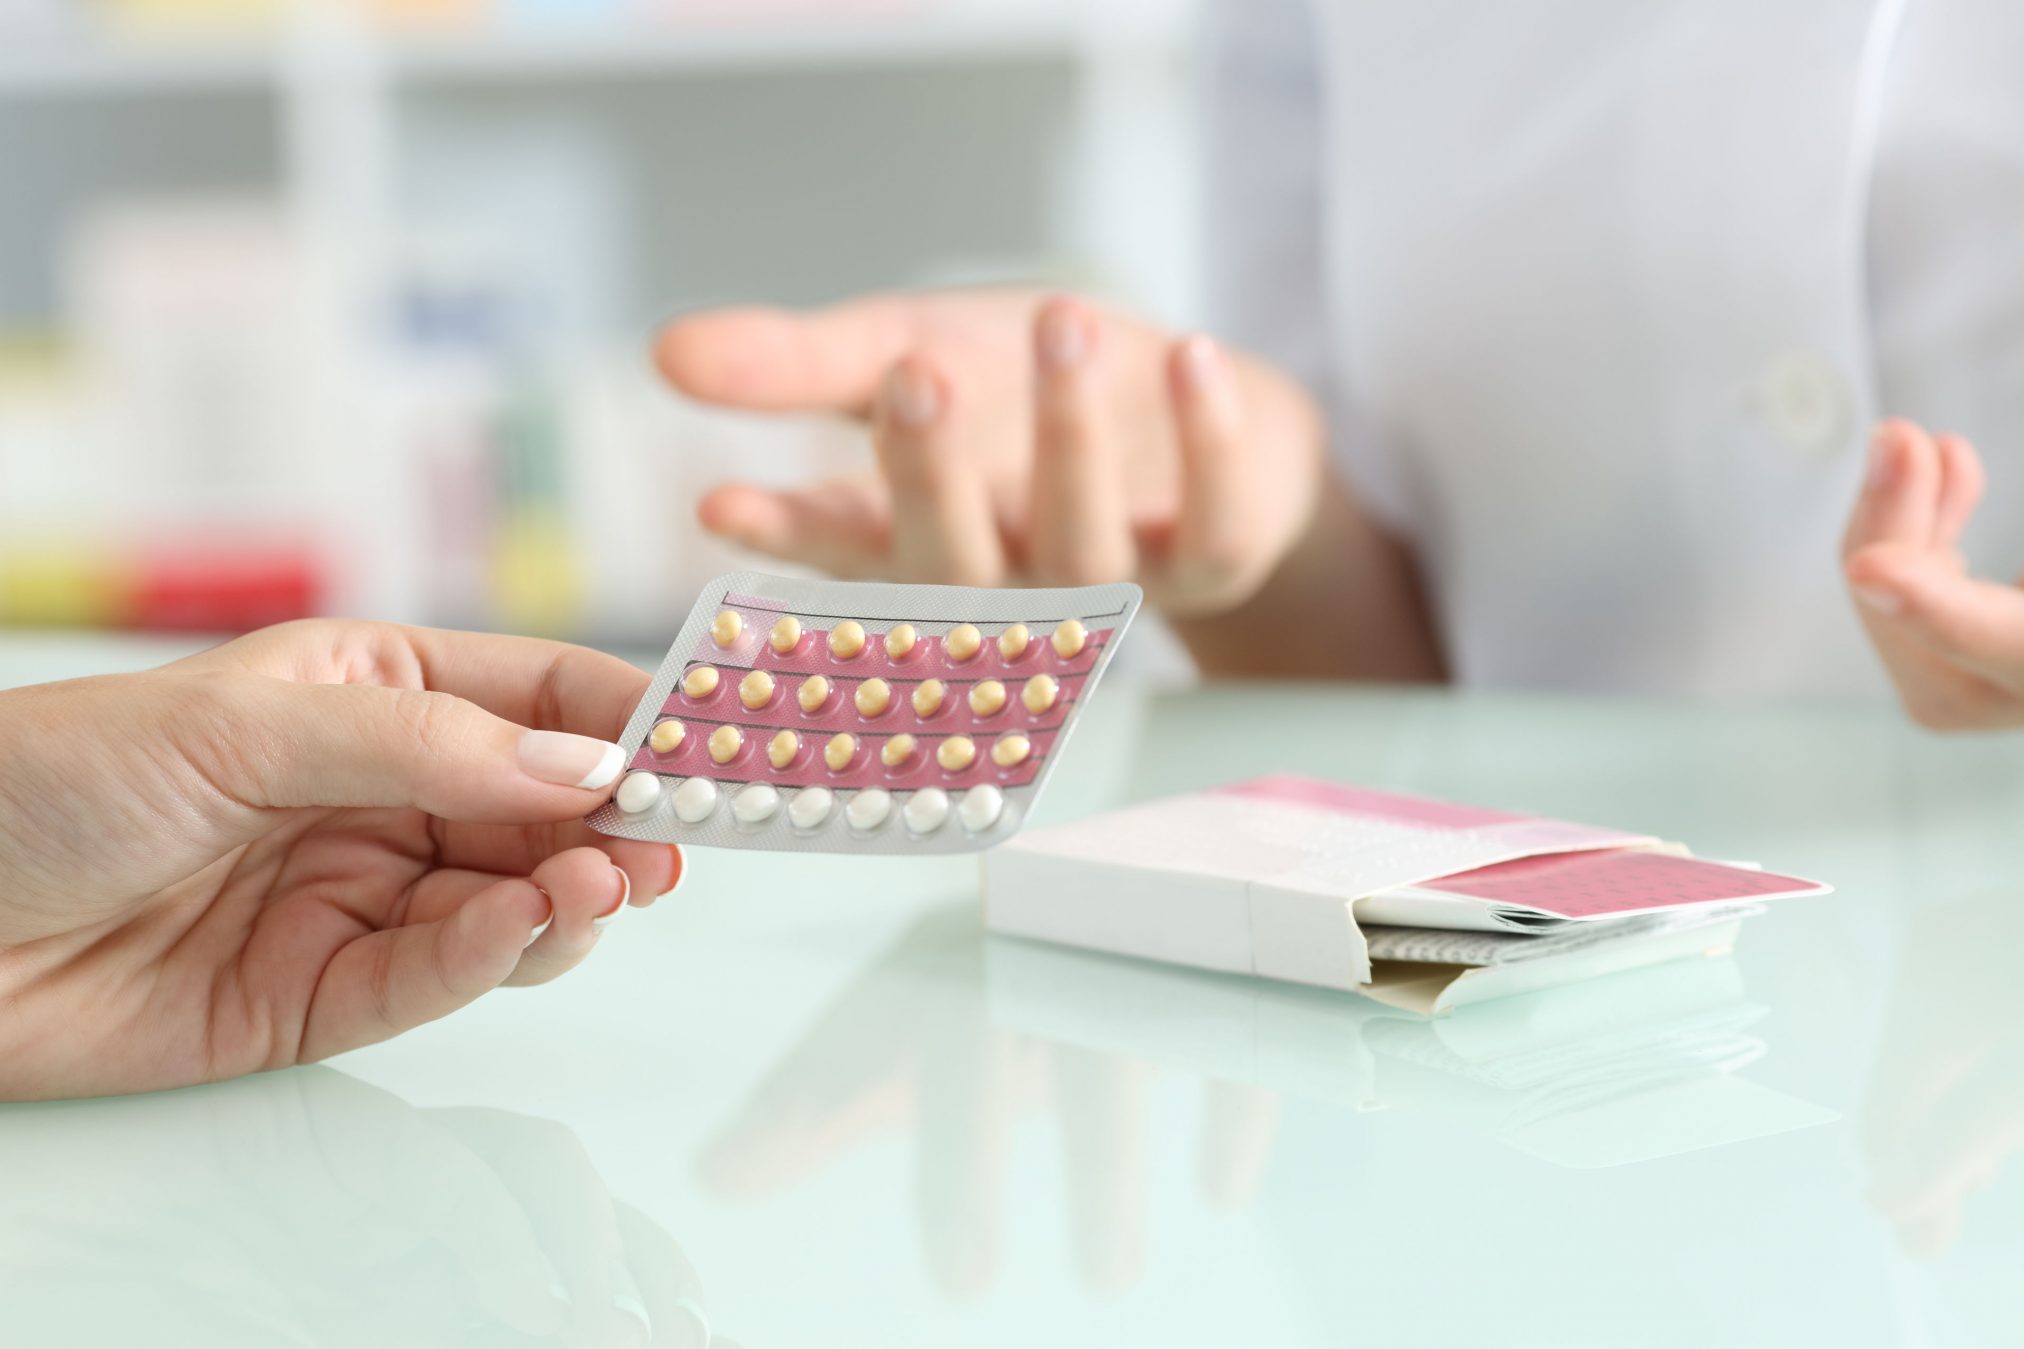 contraception women's health contraceptive birth control pill